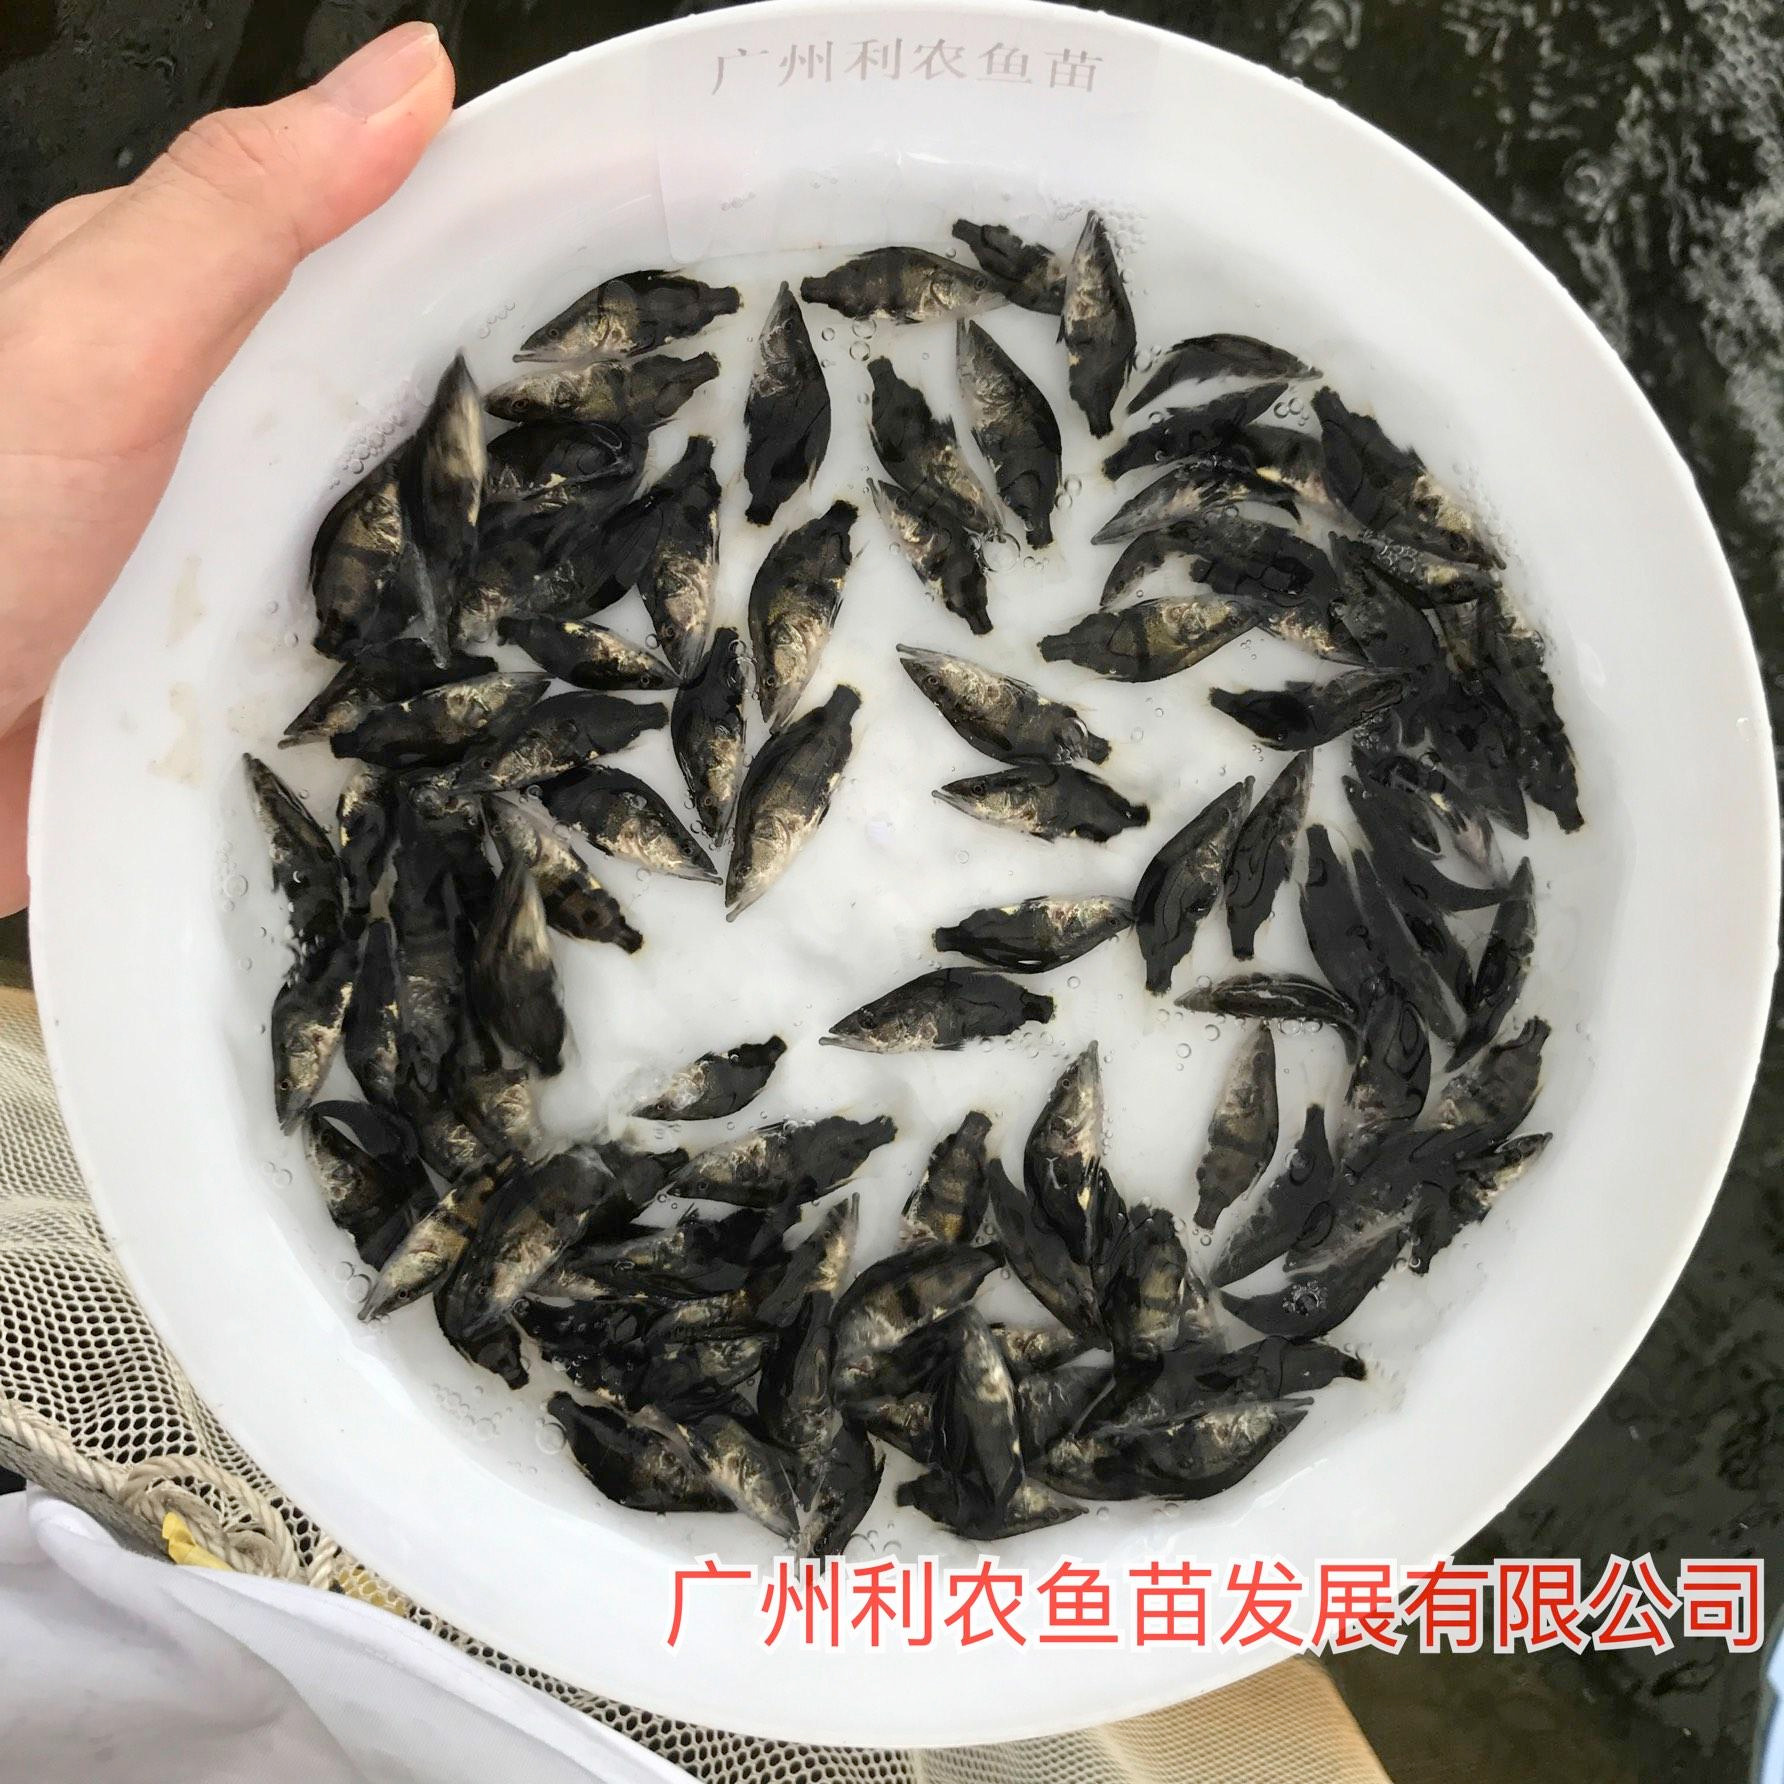 少病害 江西萍乡桂花鱼苗出售 5cm快大品种优选鳜鱼苗